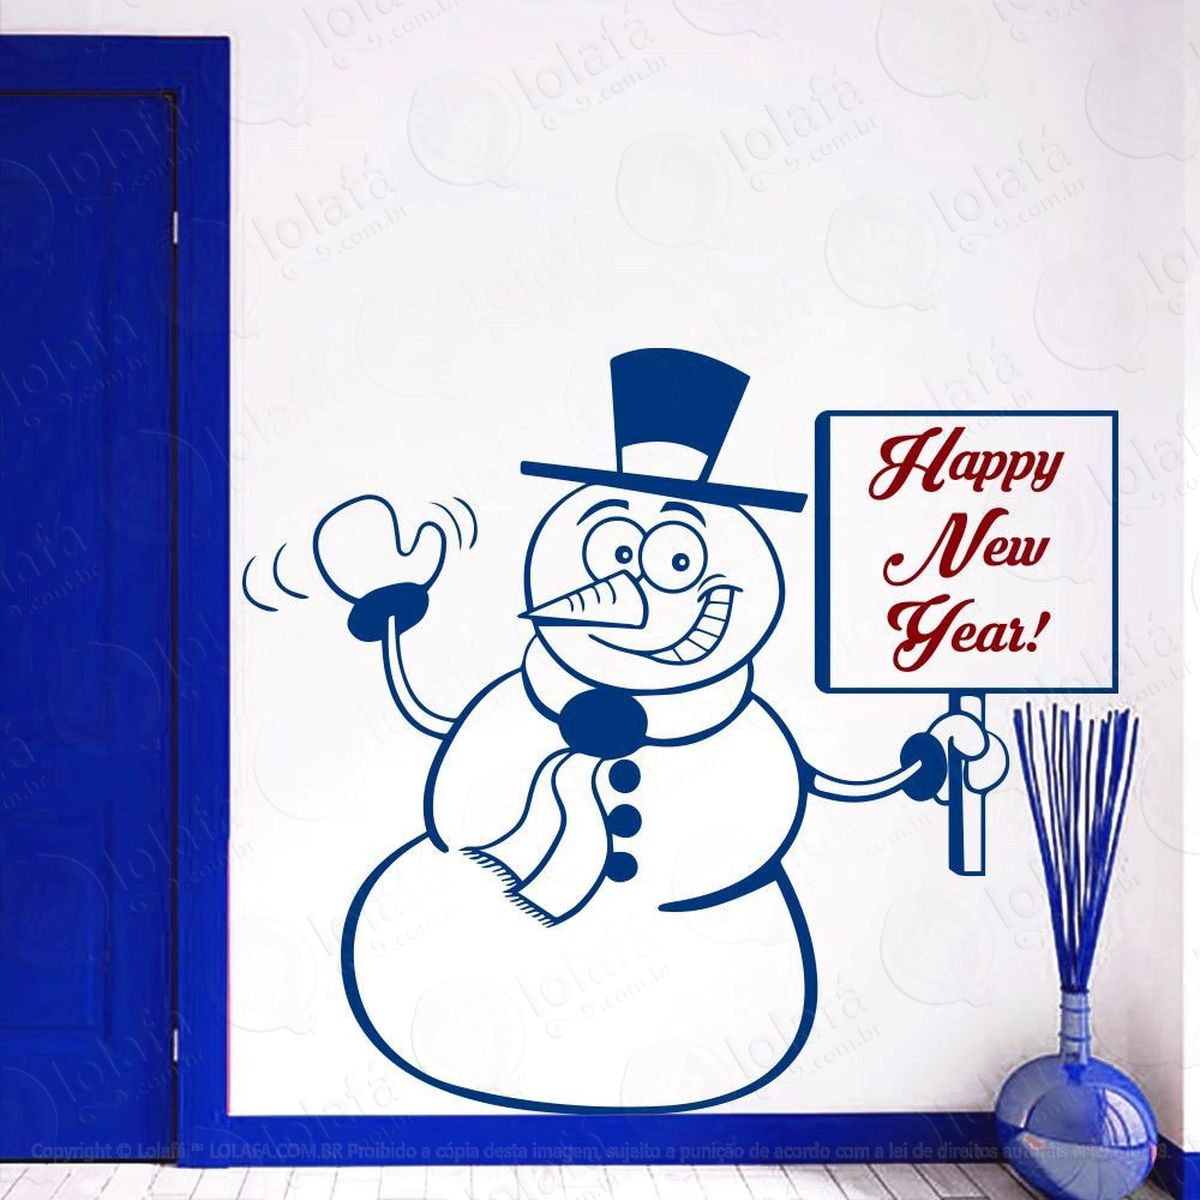 boneco de neve adesivo de natal para vitrine, parede, porta de vidro - decoração natalina mod:54